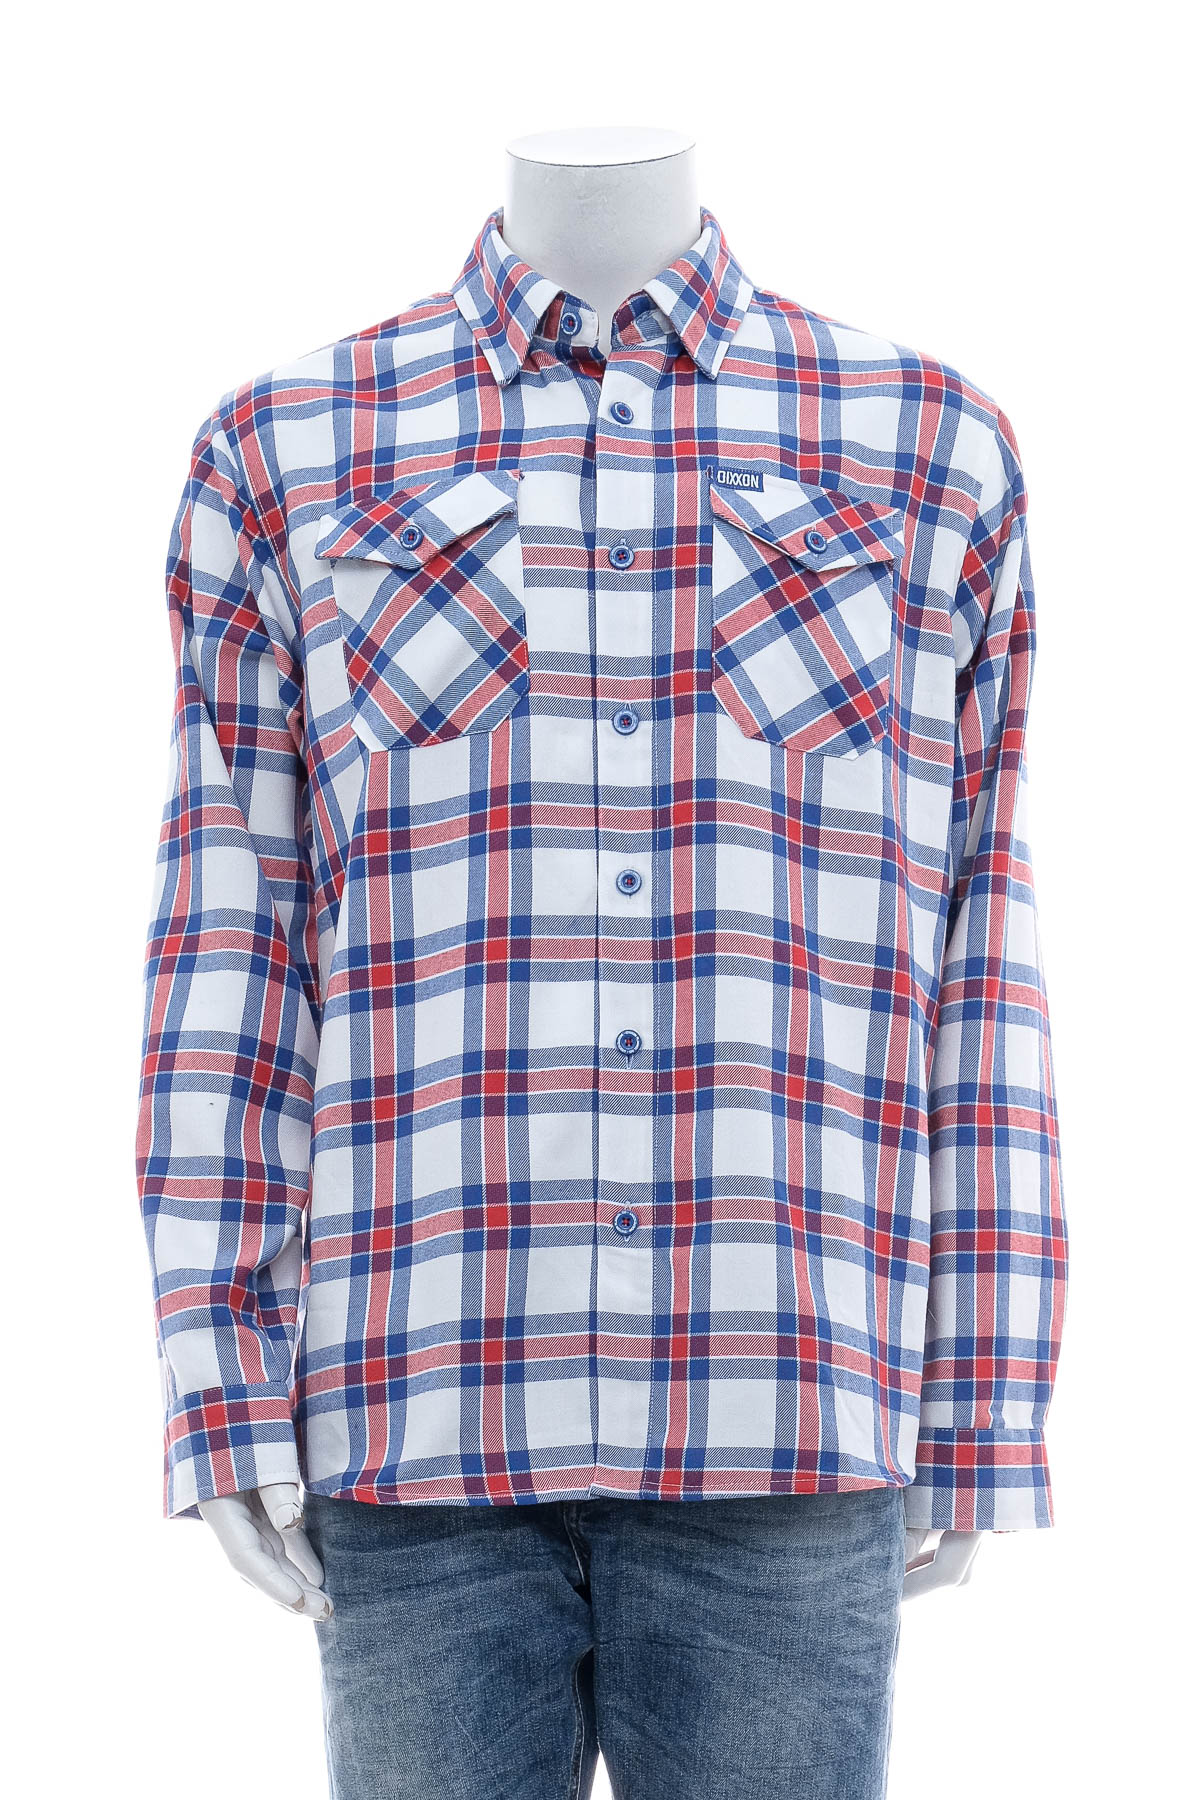 Ανδρικό πουκάμισο - Dixxon Flannel Co. - 0